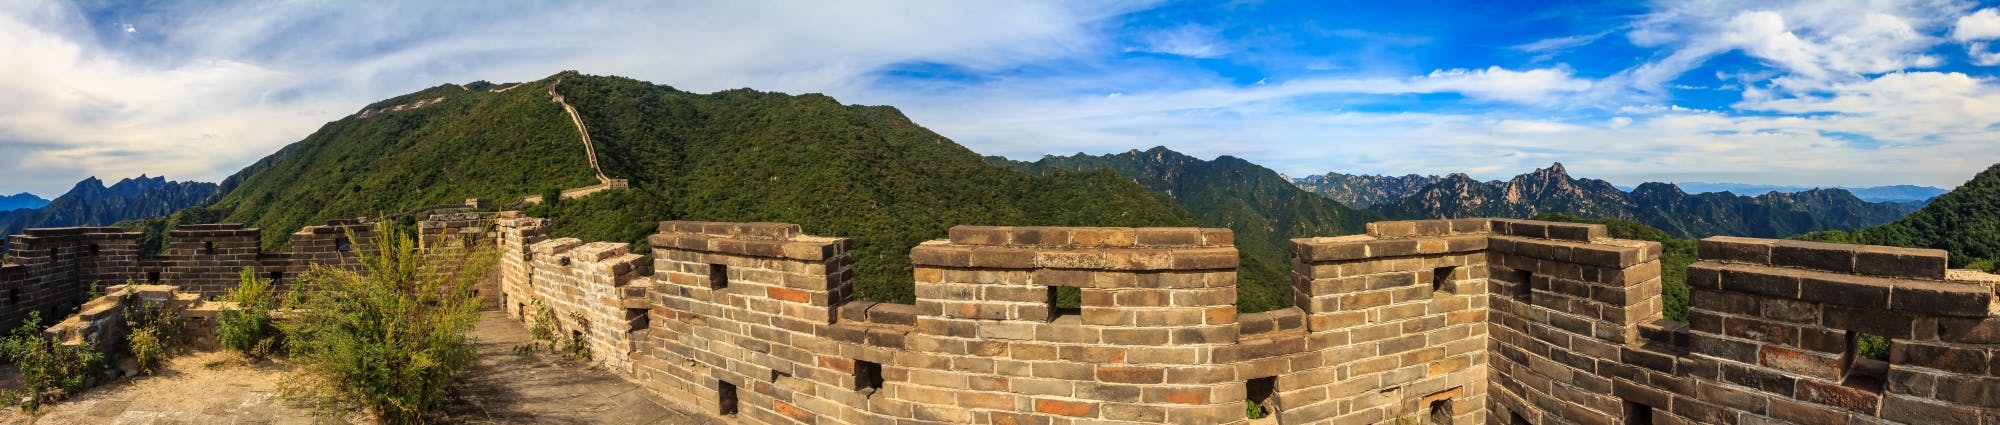 Kleingruppentour zur Mutianyu-Chinesischen Mauer mit Mittagessen